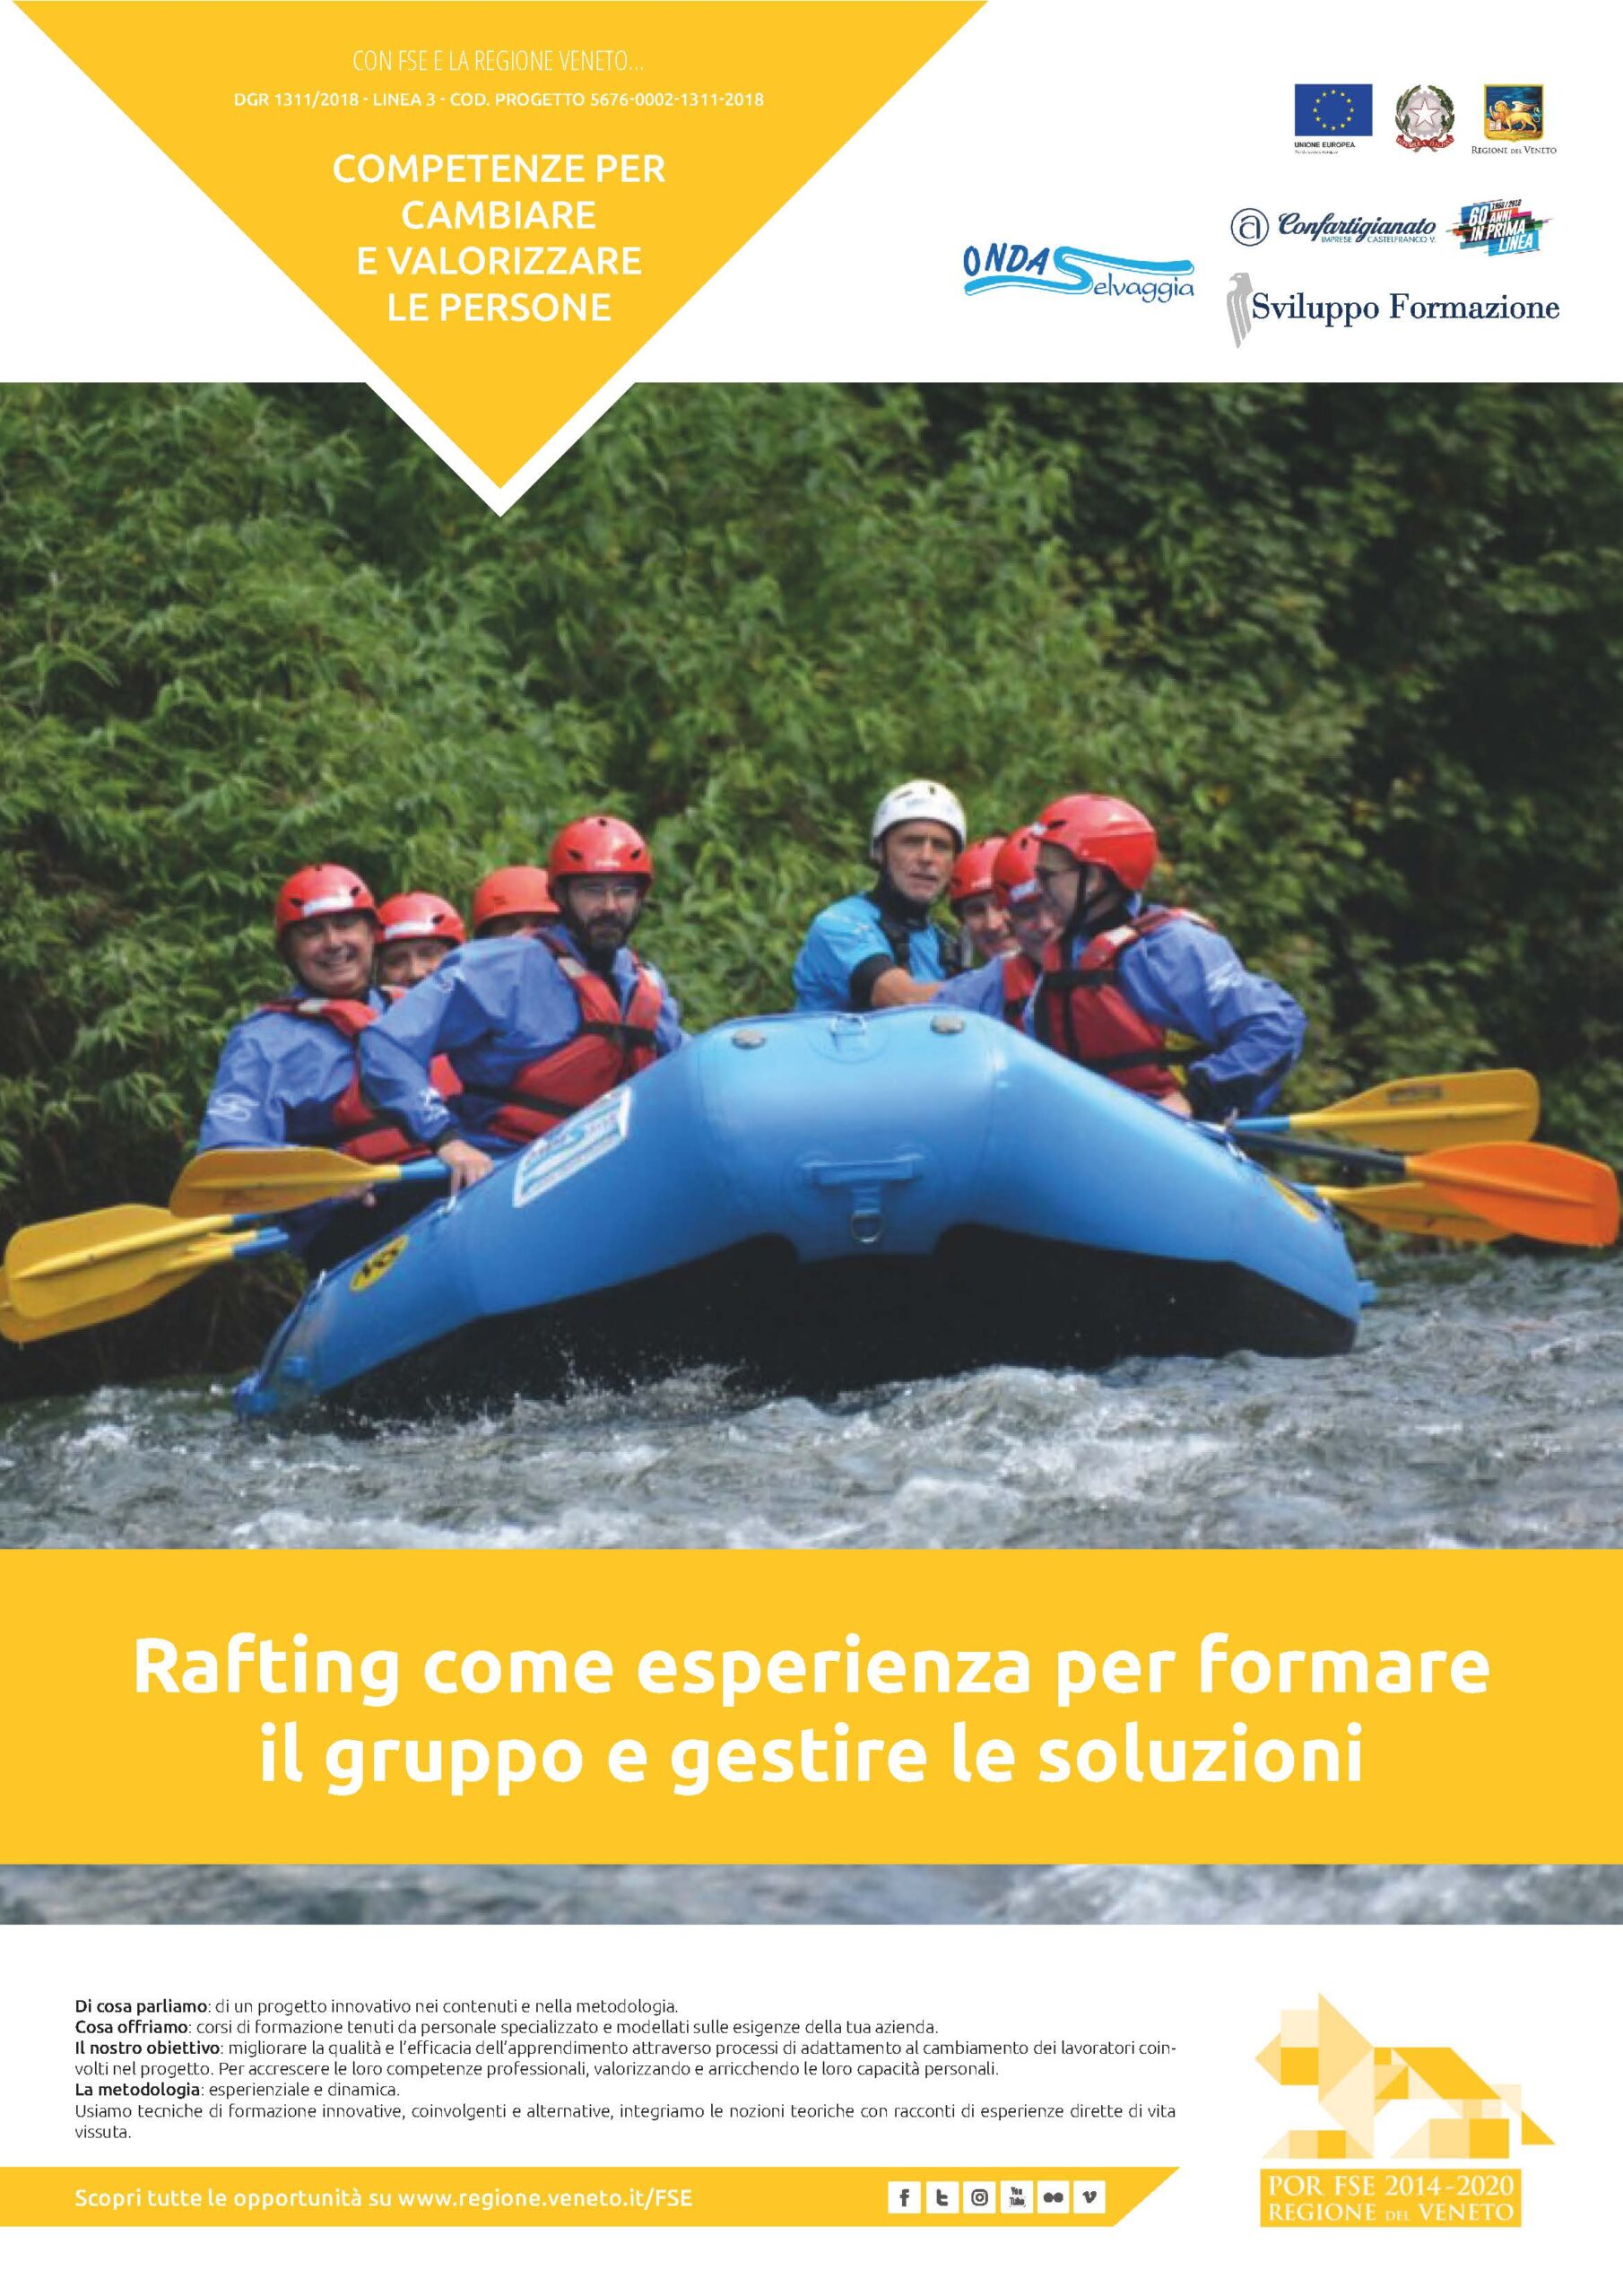 DGR 1311/2018: Rafting come esperienza per formare il gruppo e gestire le soluzioni